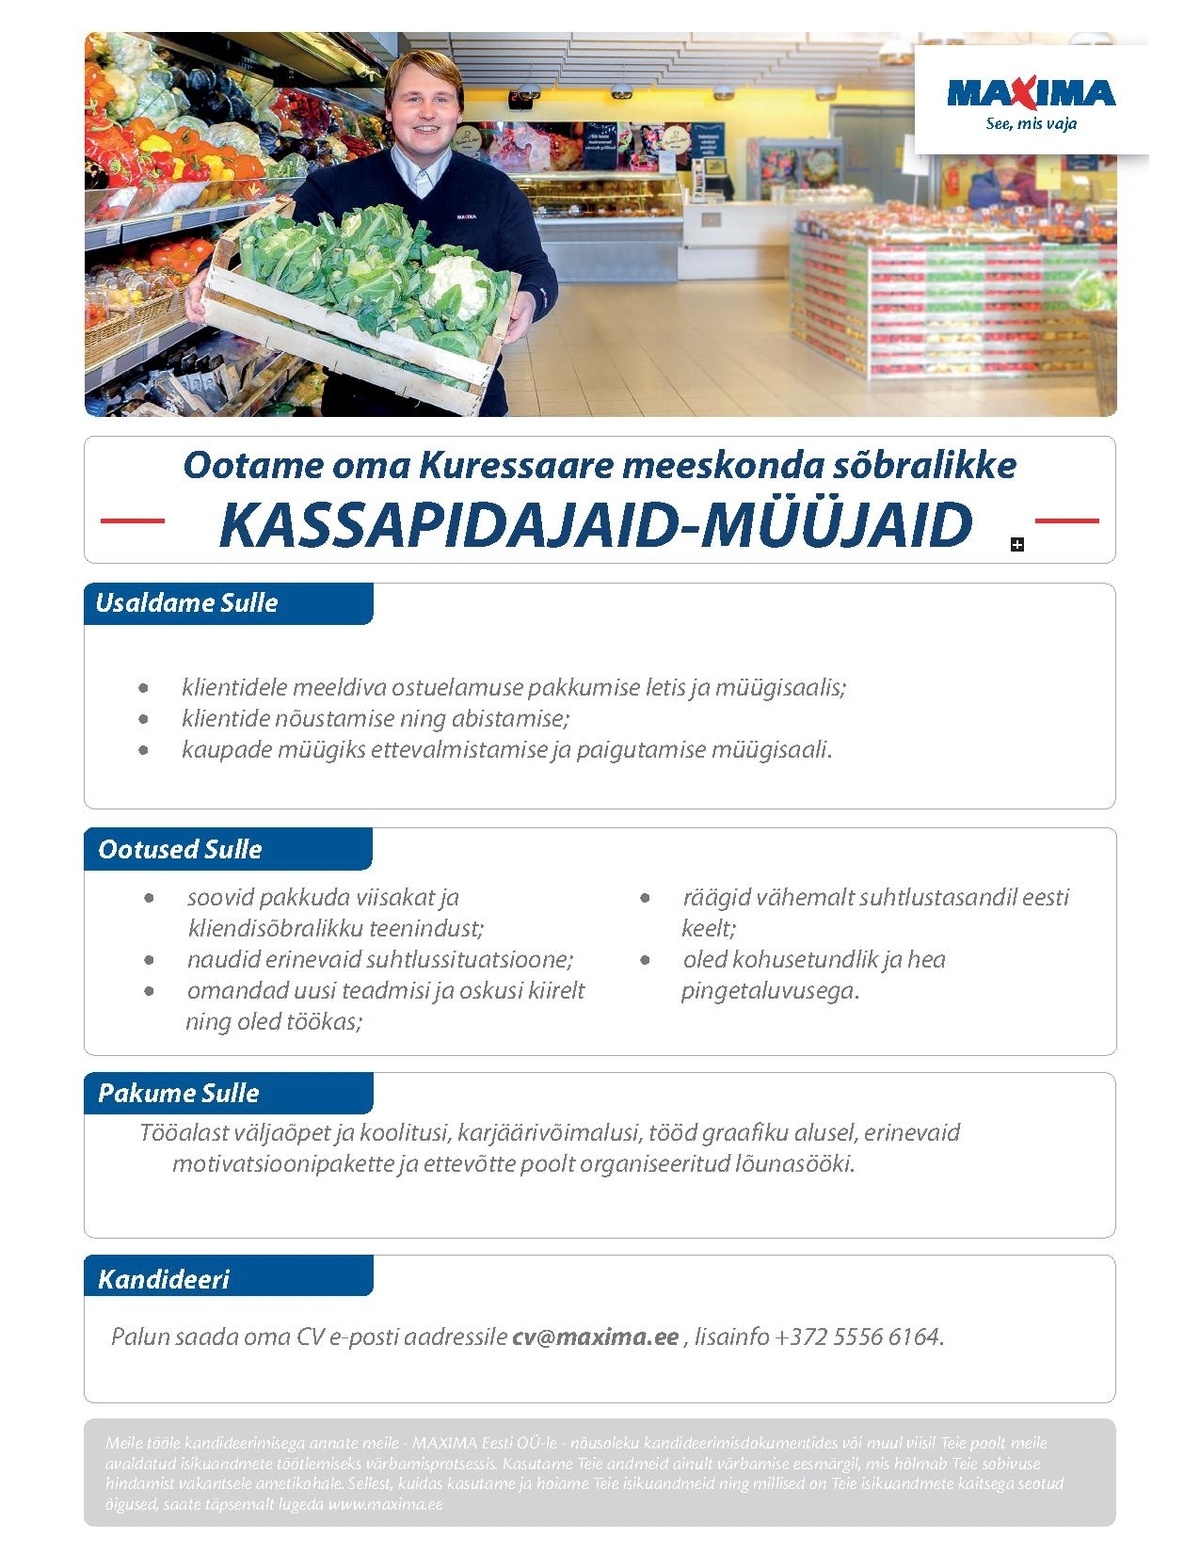 Maxima Eesti OÜ Kassapidaja-müüja Kuressaare Maximas